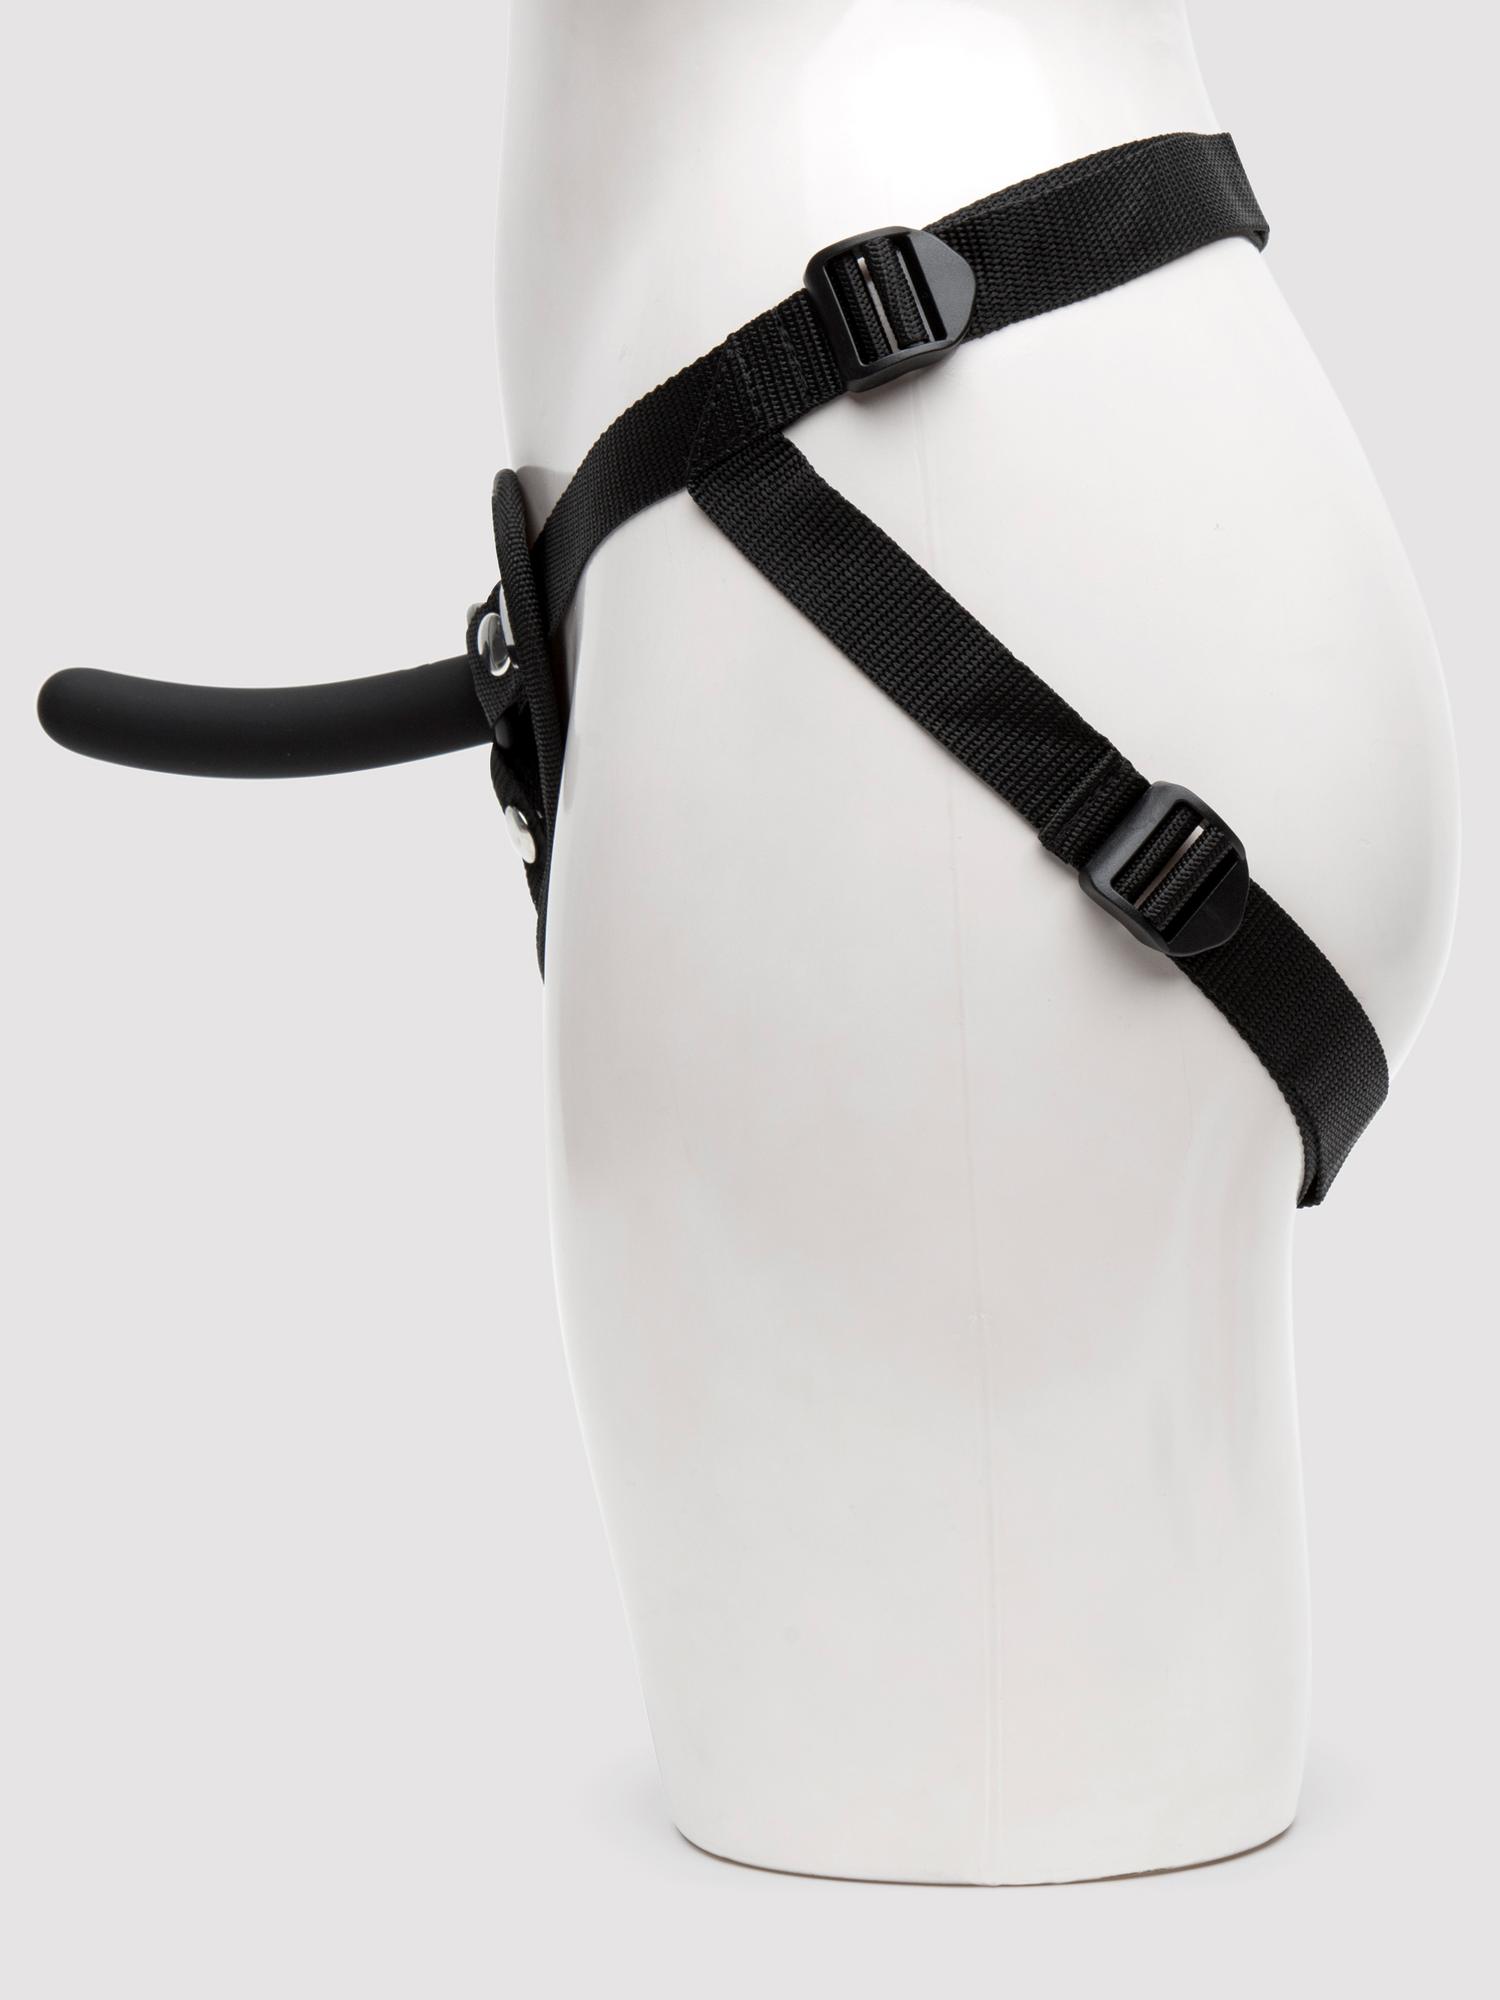 Lovehoney Beginner's Unisex Strap-On Harness Kit with 5 Inch Pegging Dildo. Slide 2